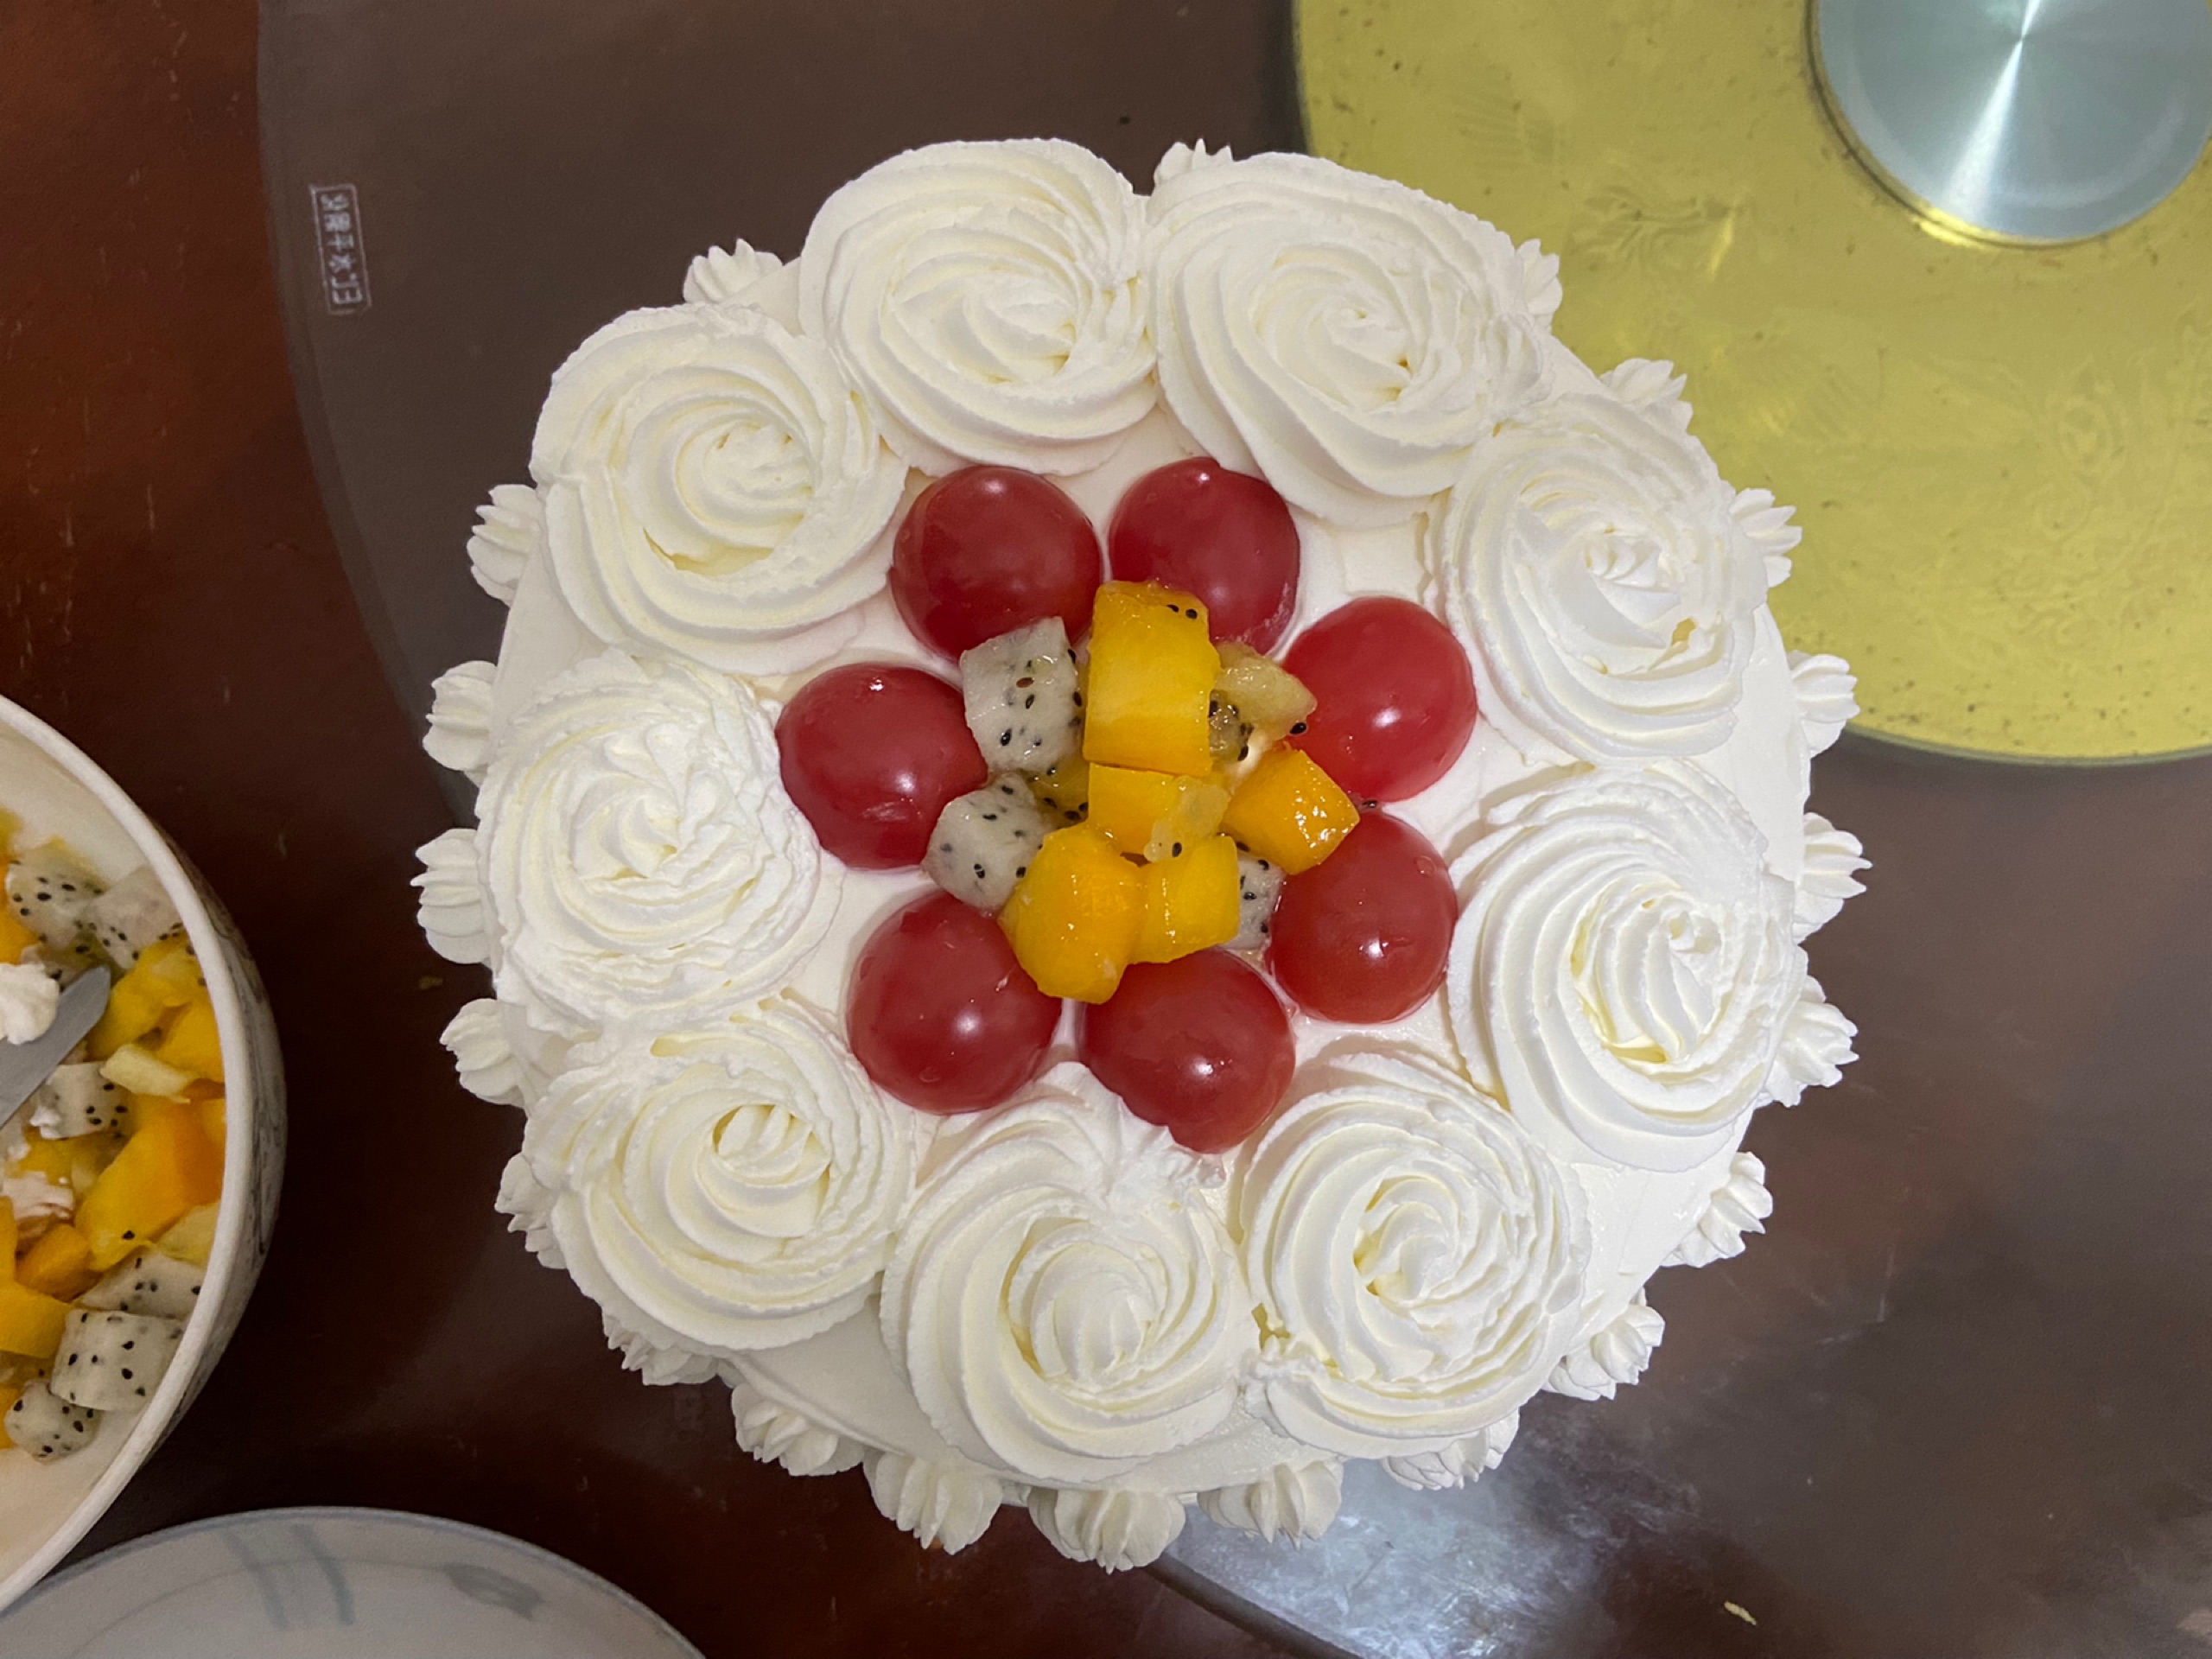 简易裱花奶油蛋糕制作方法婚礼蛋糕 双层蛋糕 韩式裱花 烘焙 甜品 生日蛋糕 双层蛋糕_哔哩哔哩_bilibili